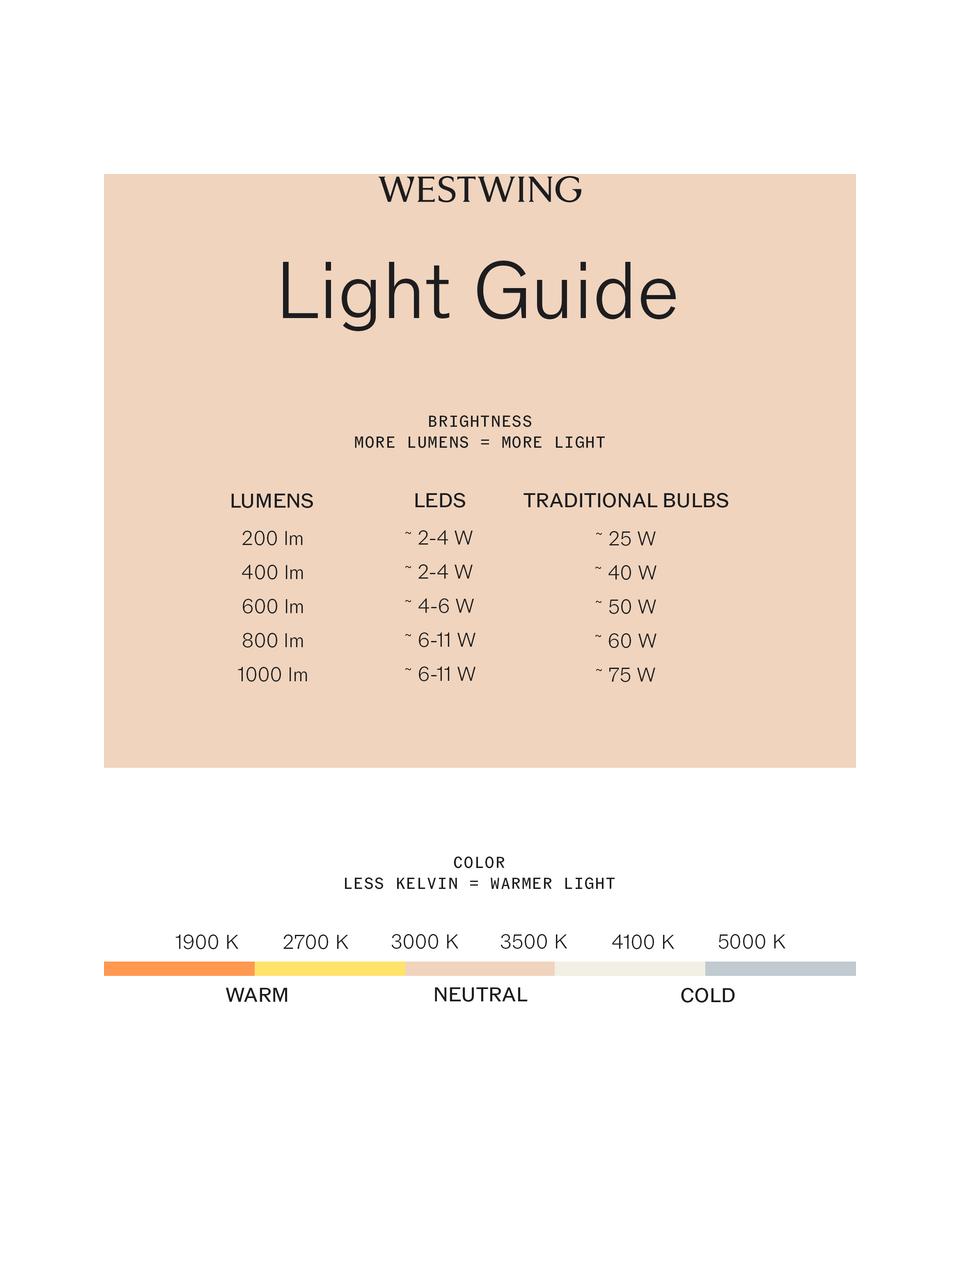 Große dimmbare LED-Pendelleuchte Perla, verschiedene Größen, Goldfarben, Weiß, Ø 62 cm